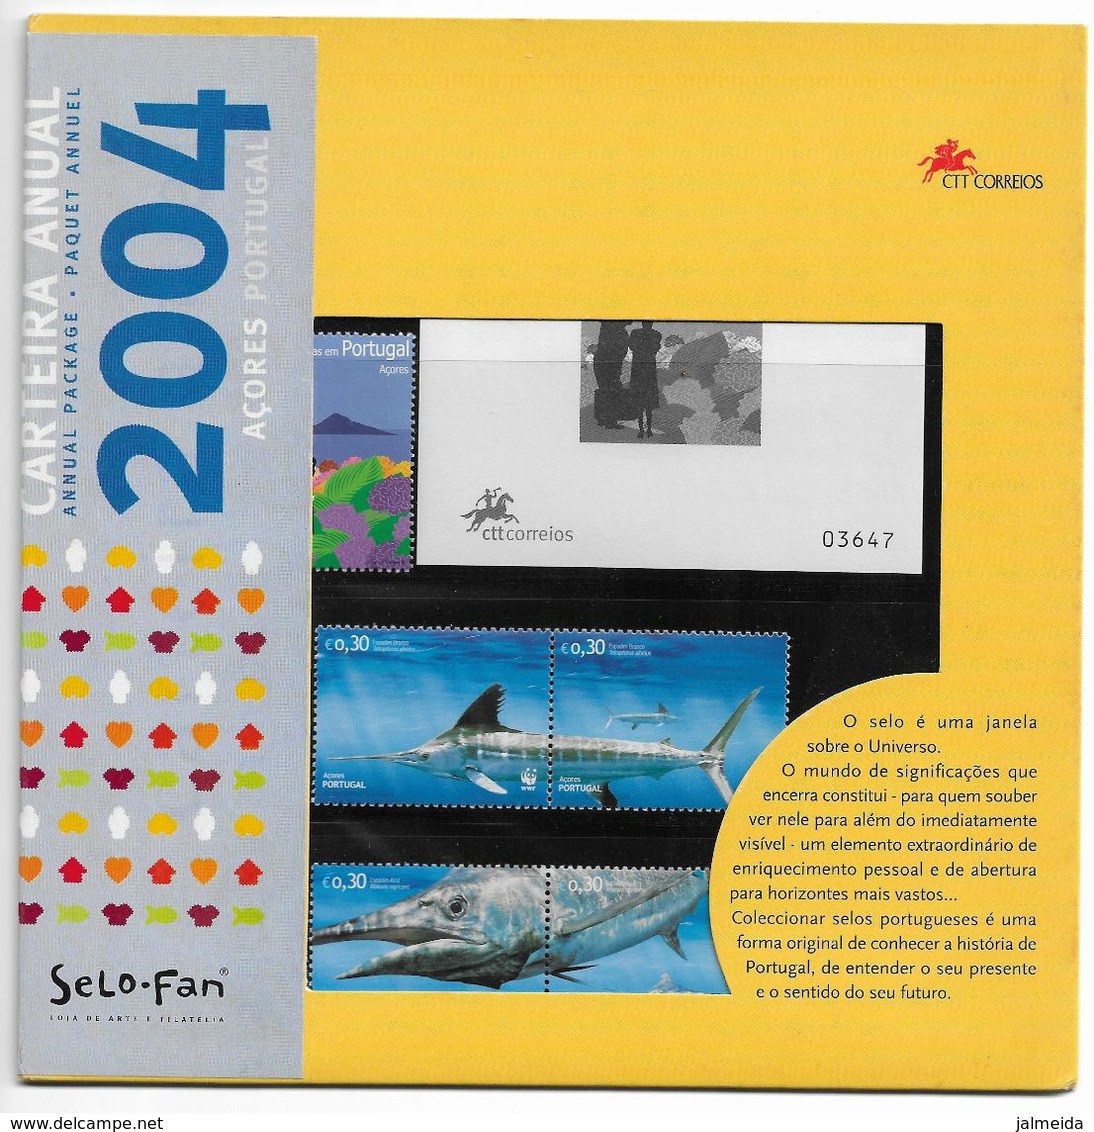 Portugal – 2004 – Carteira Anual – Açores - Libro Dell'anno